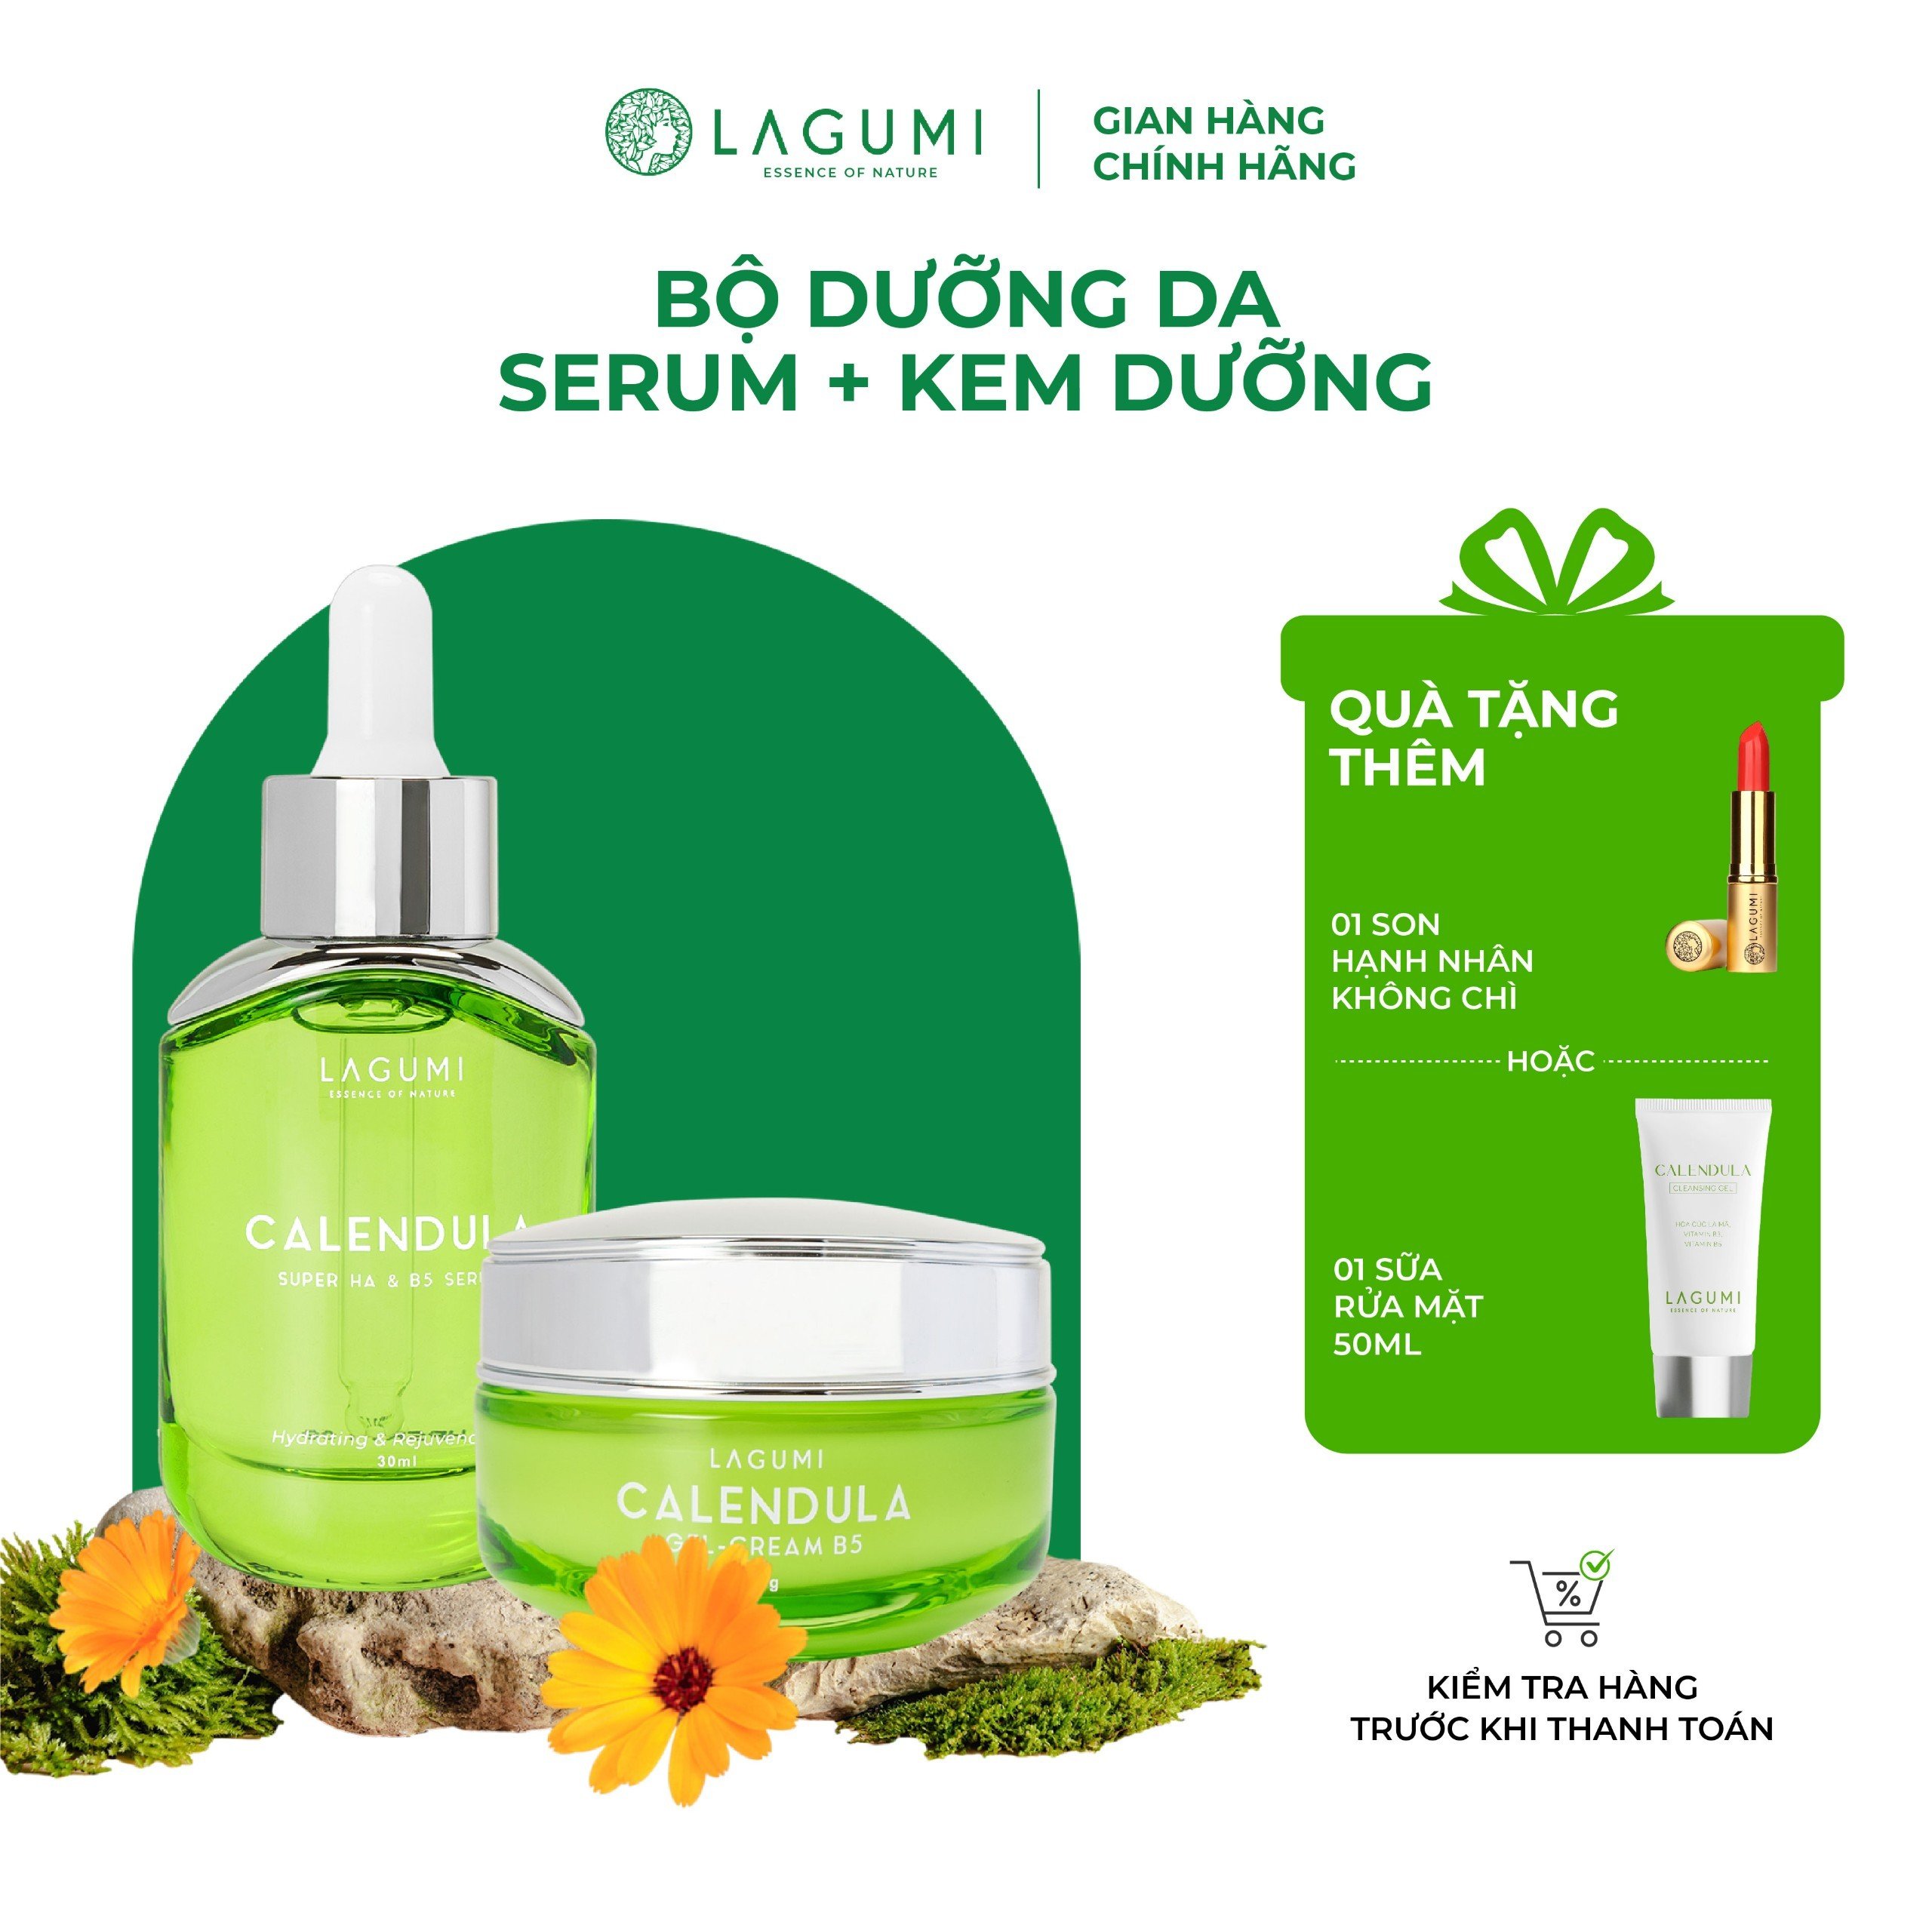 Bộ serum, kem dưỡng Lagumi cho da dầu, mụn với thành phần B5, Calendula, Super HA giảm mụn, cấp ẩm, sáng da